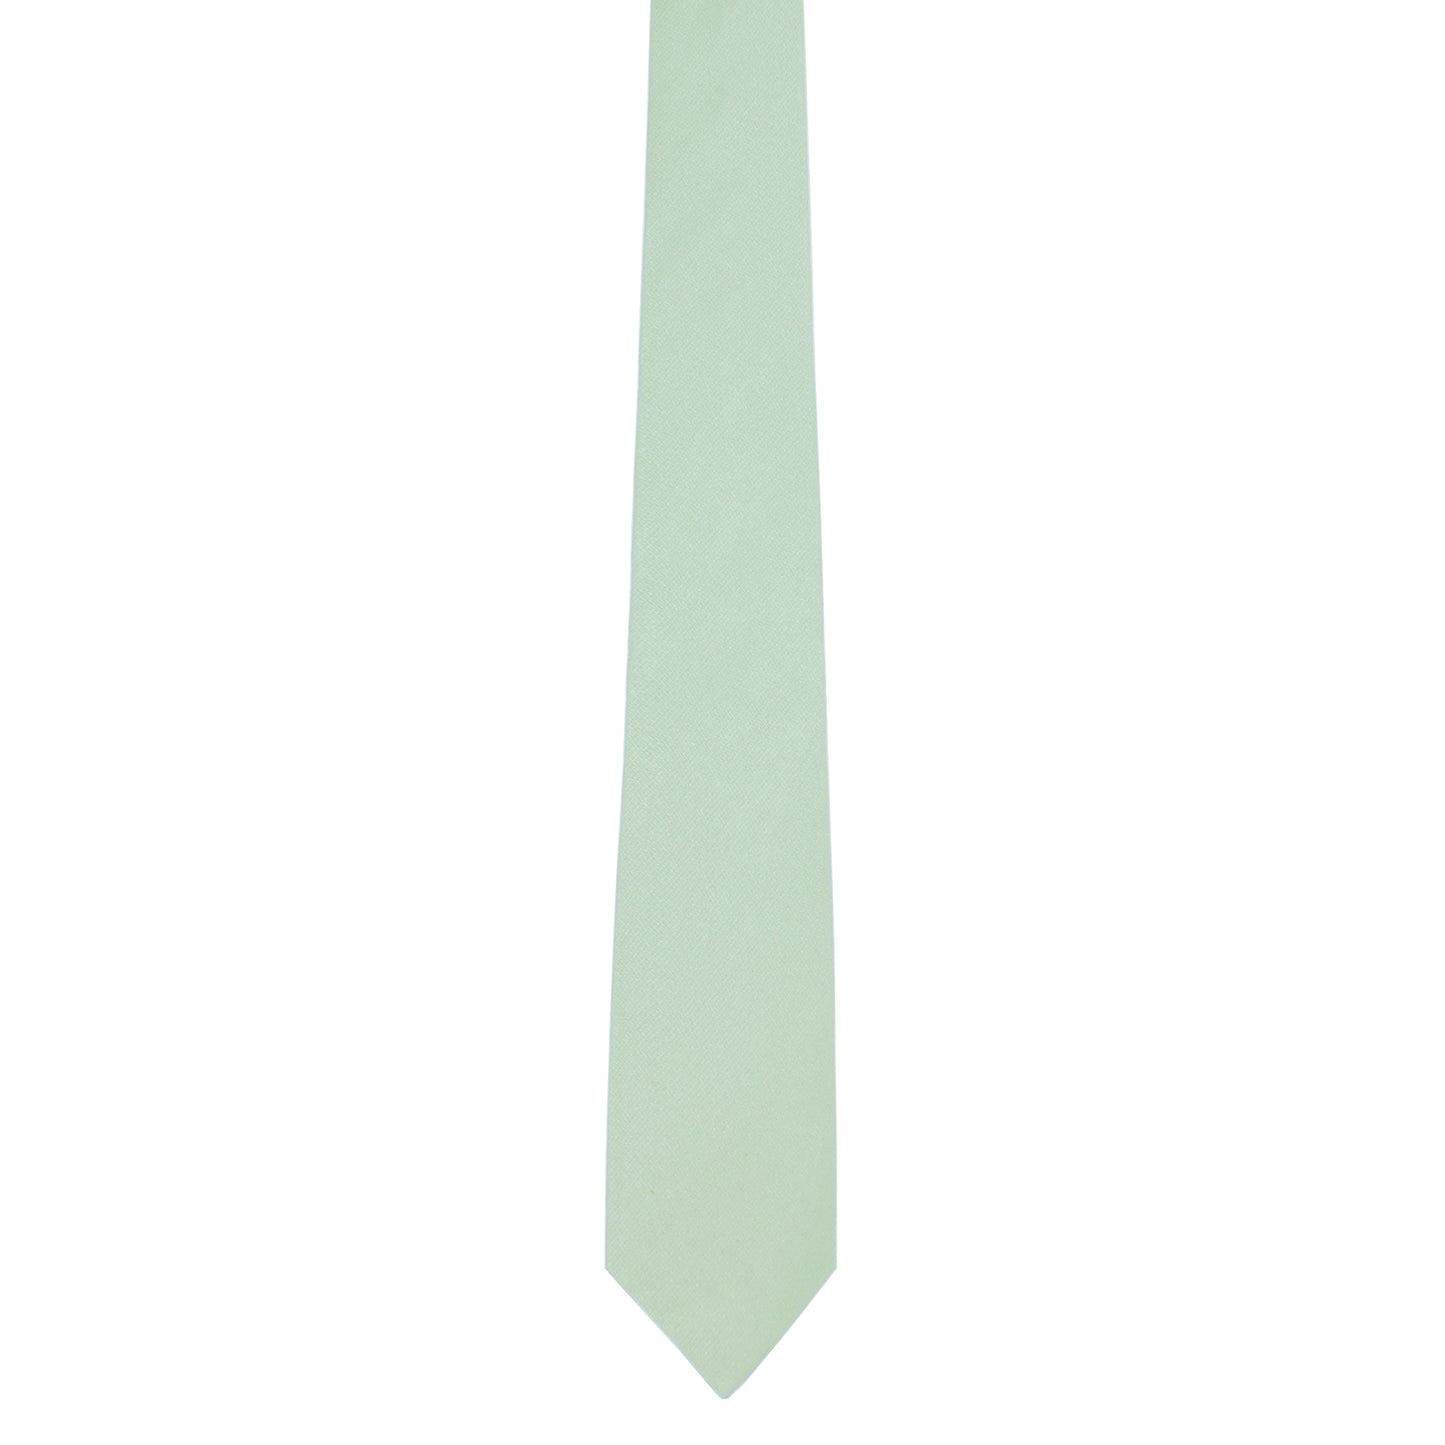 mint skinny tie for summer weddings